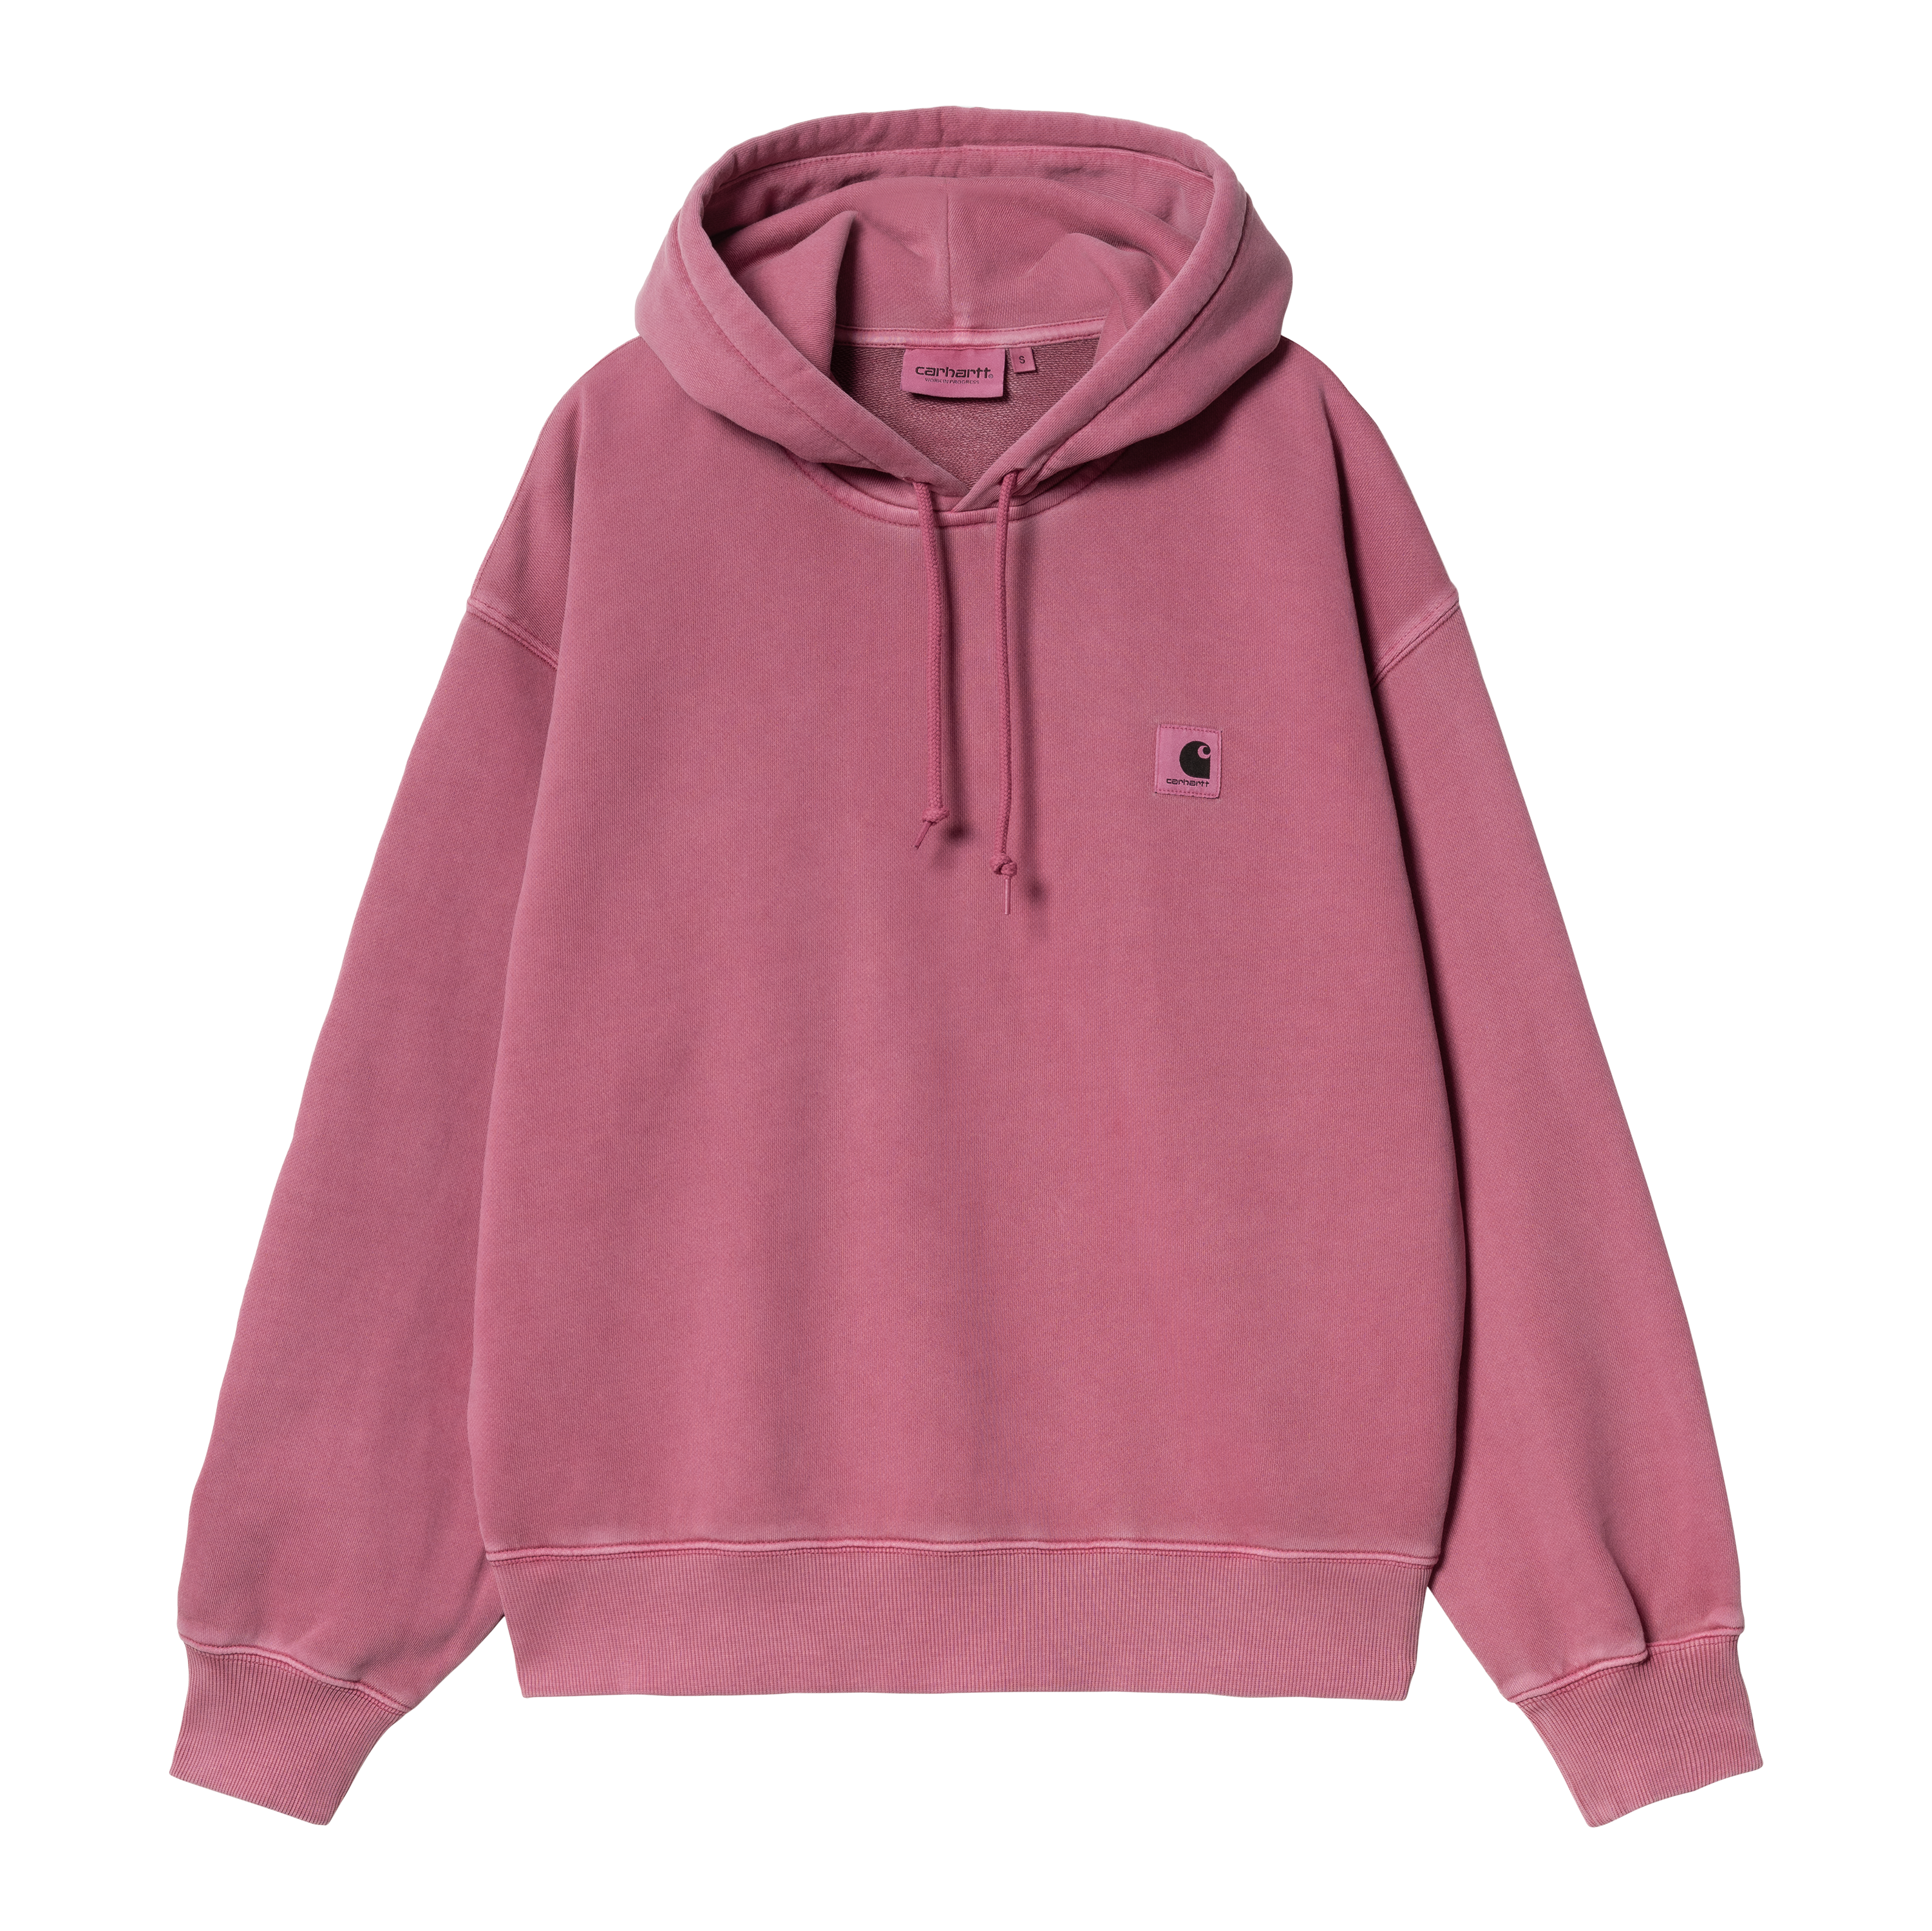 Carhartt WIP Women’s Hooded Nelson Sweatshirt in Pink